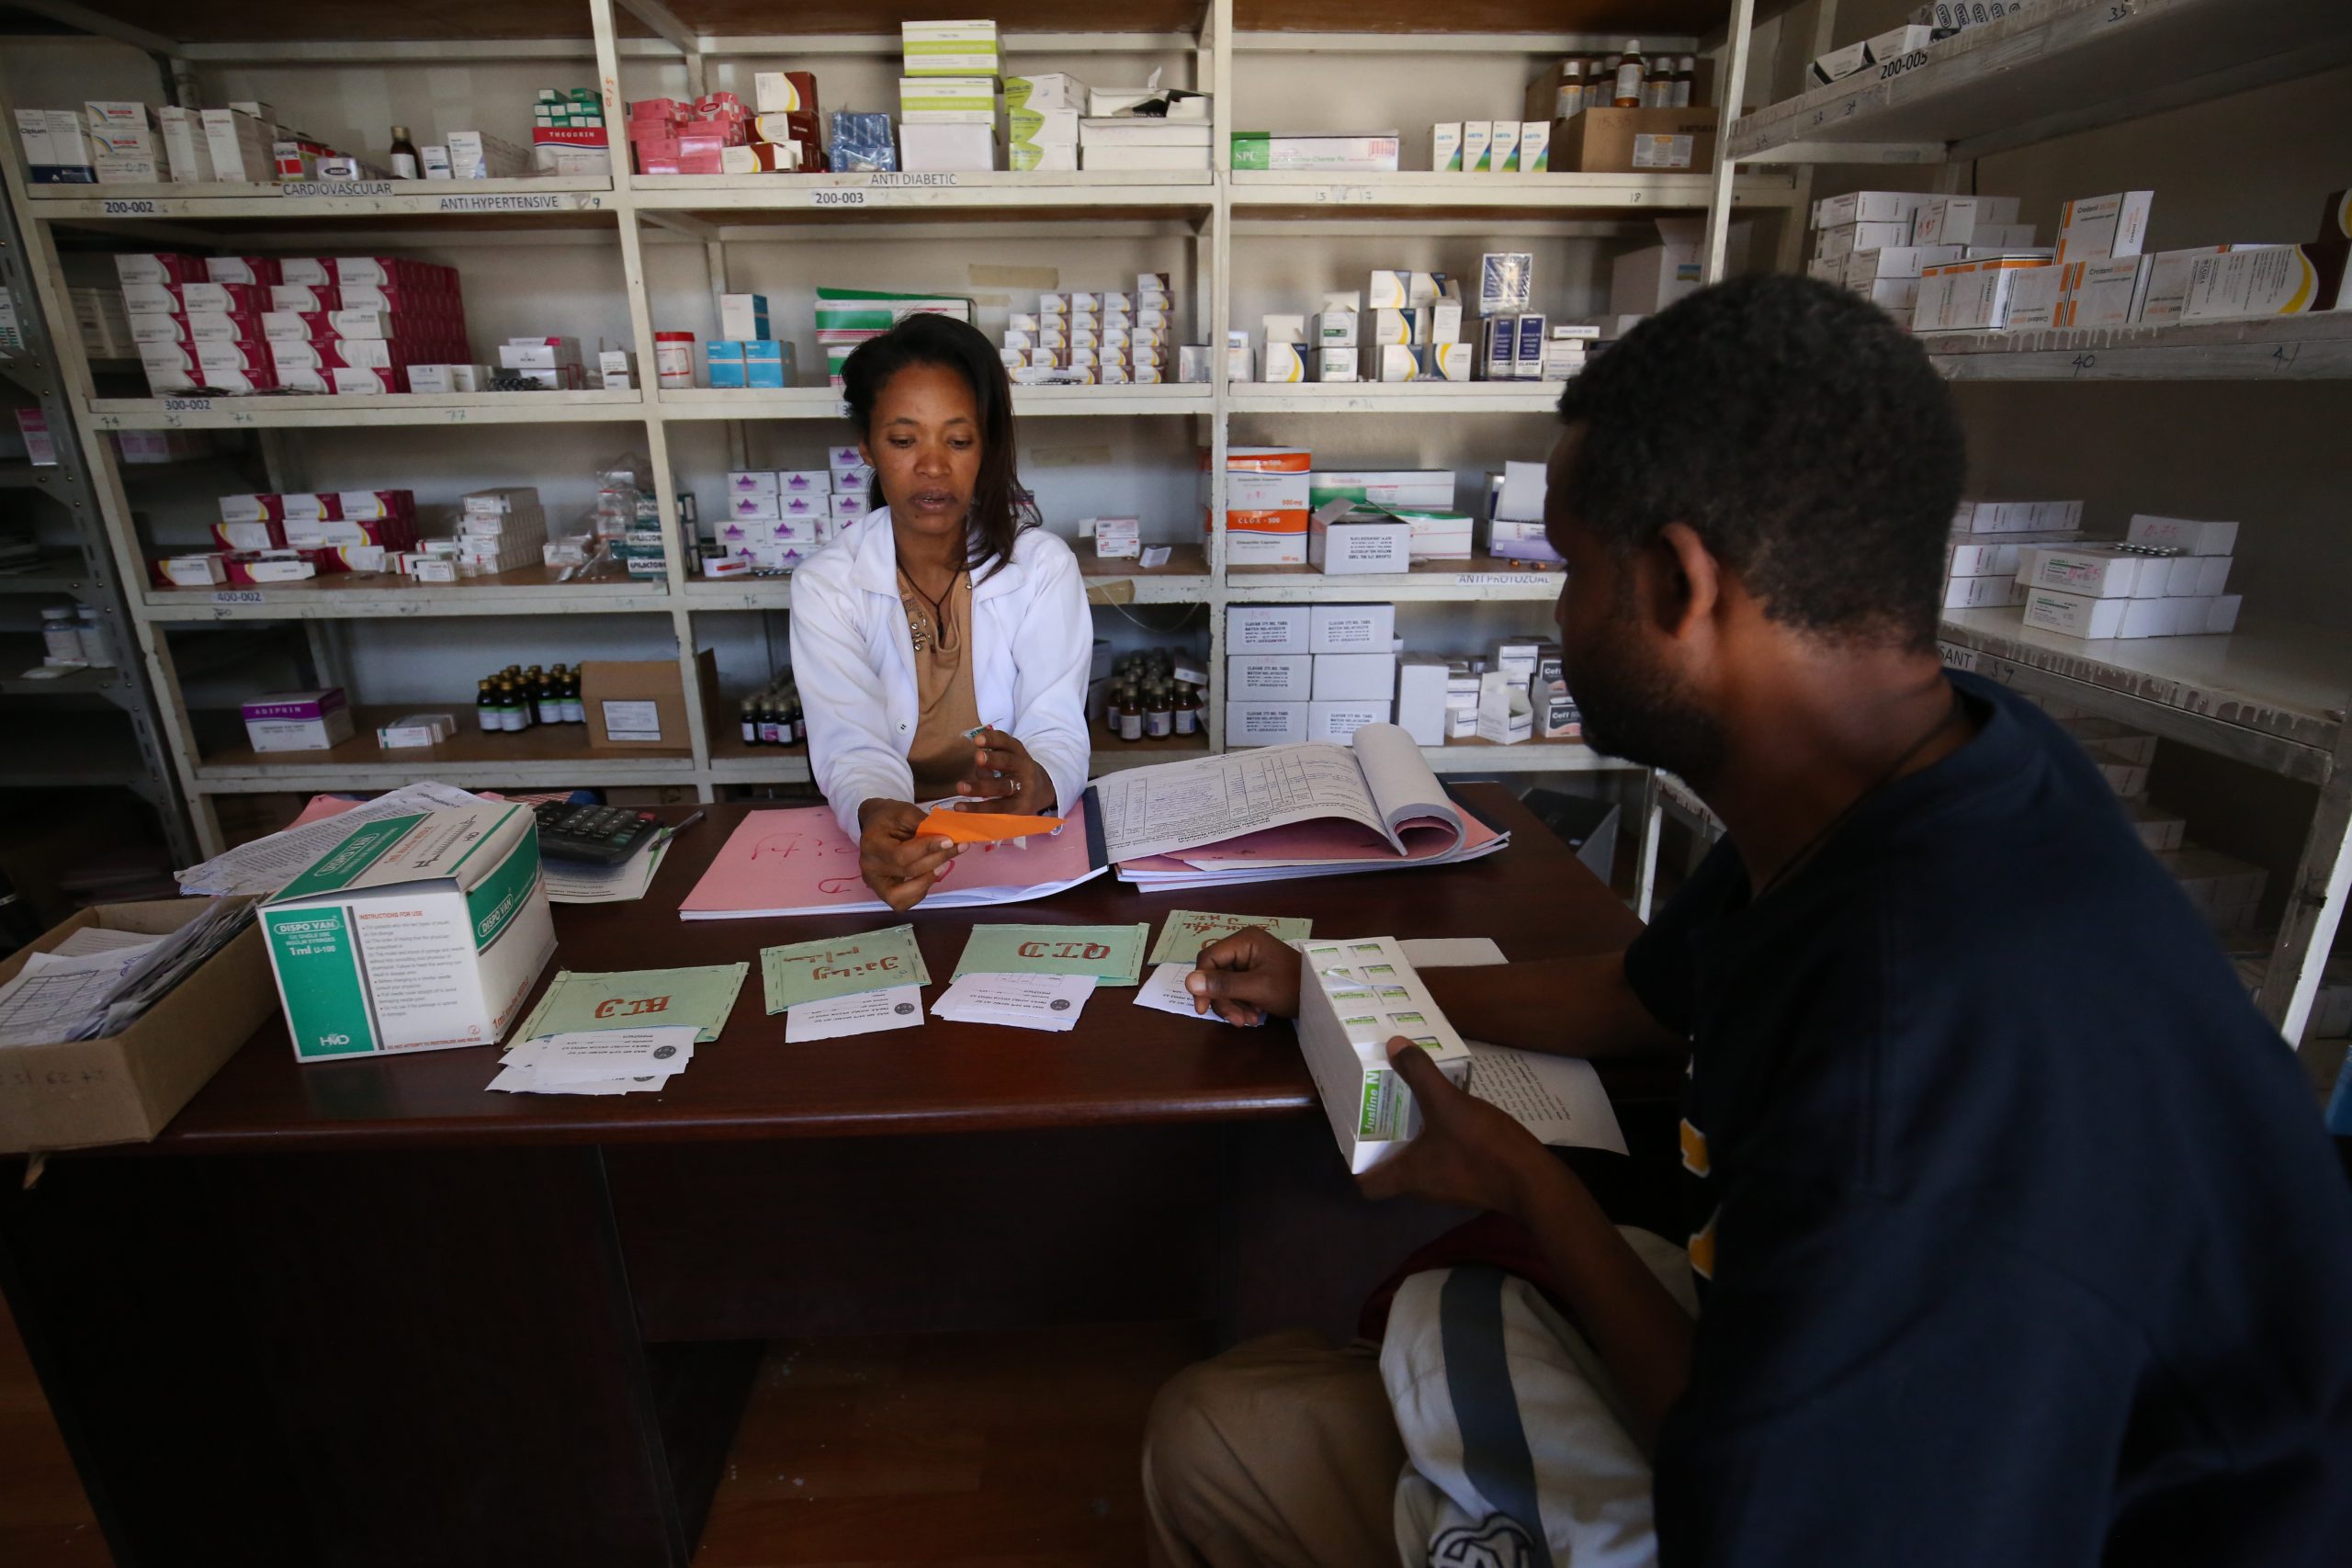 Эфиопский пакет основных медицинских услуг – на основе данных о стоимости и экономической эффективности